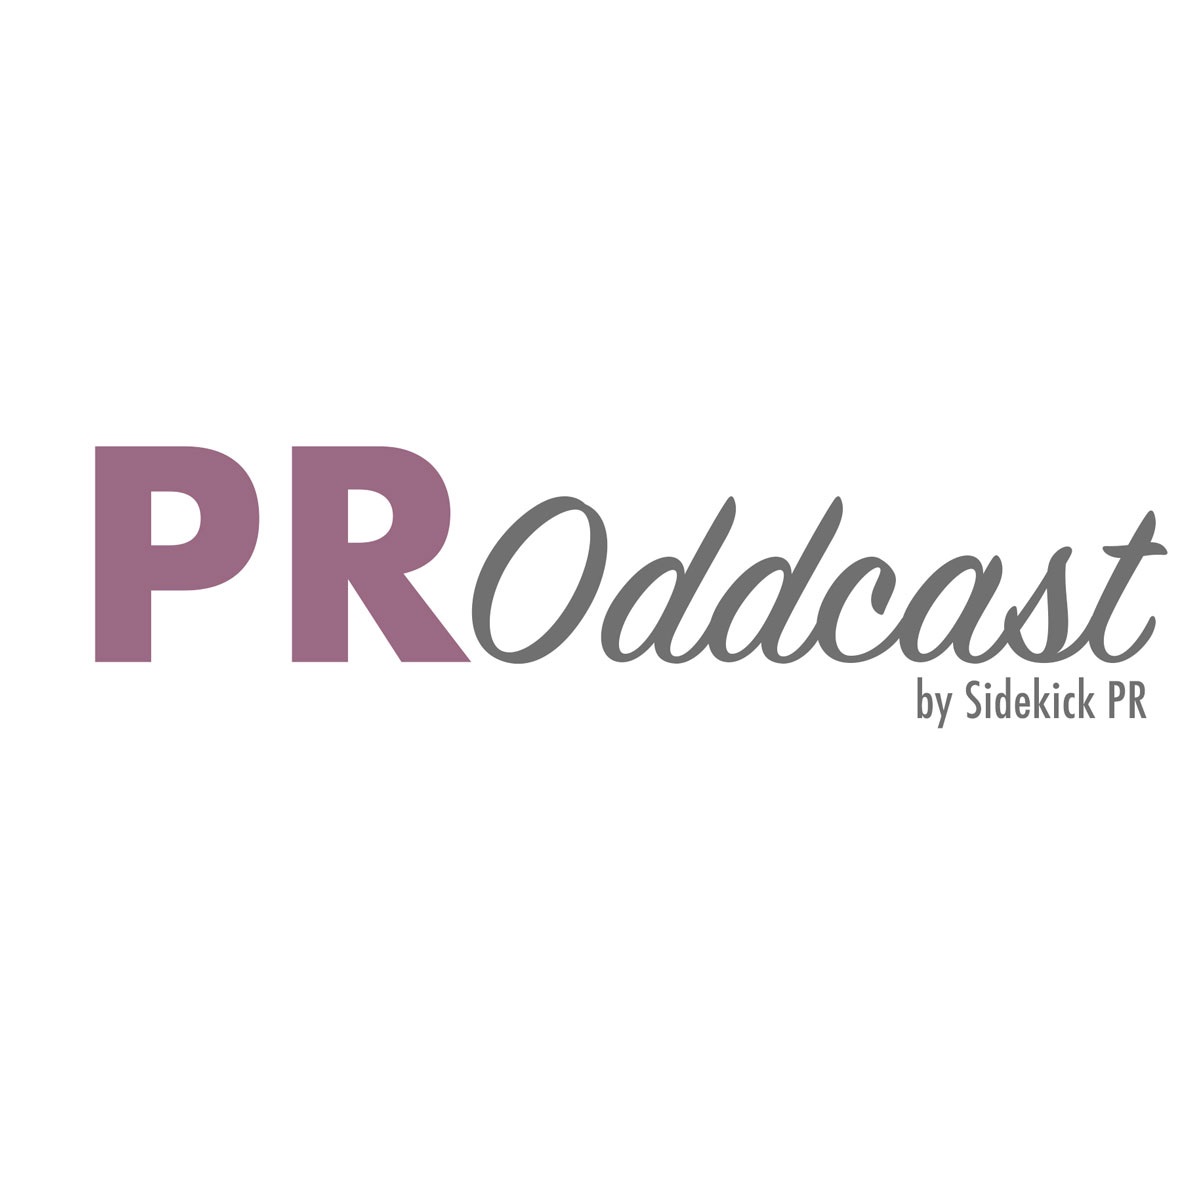 PR Oddcast – by Sidekick PR (Episode 6)